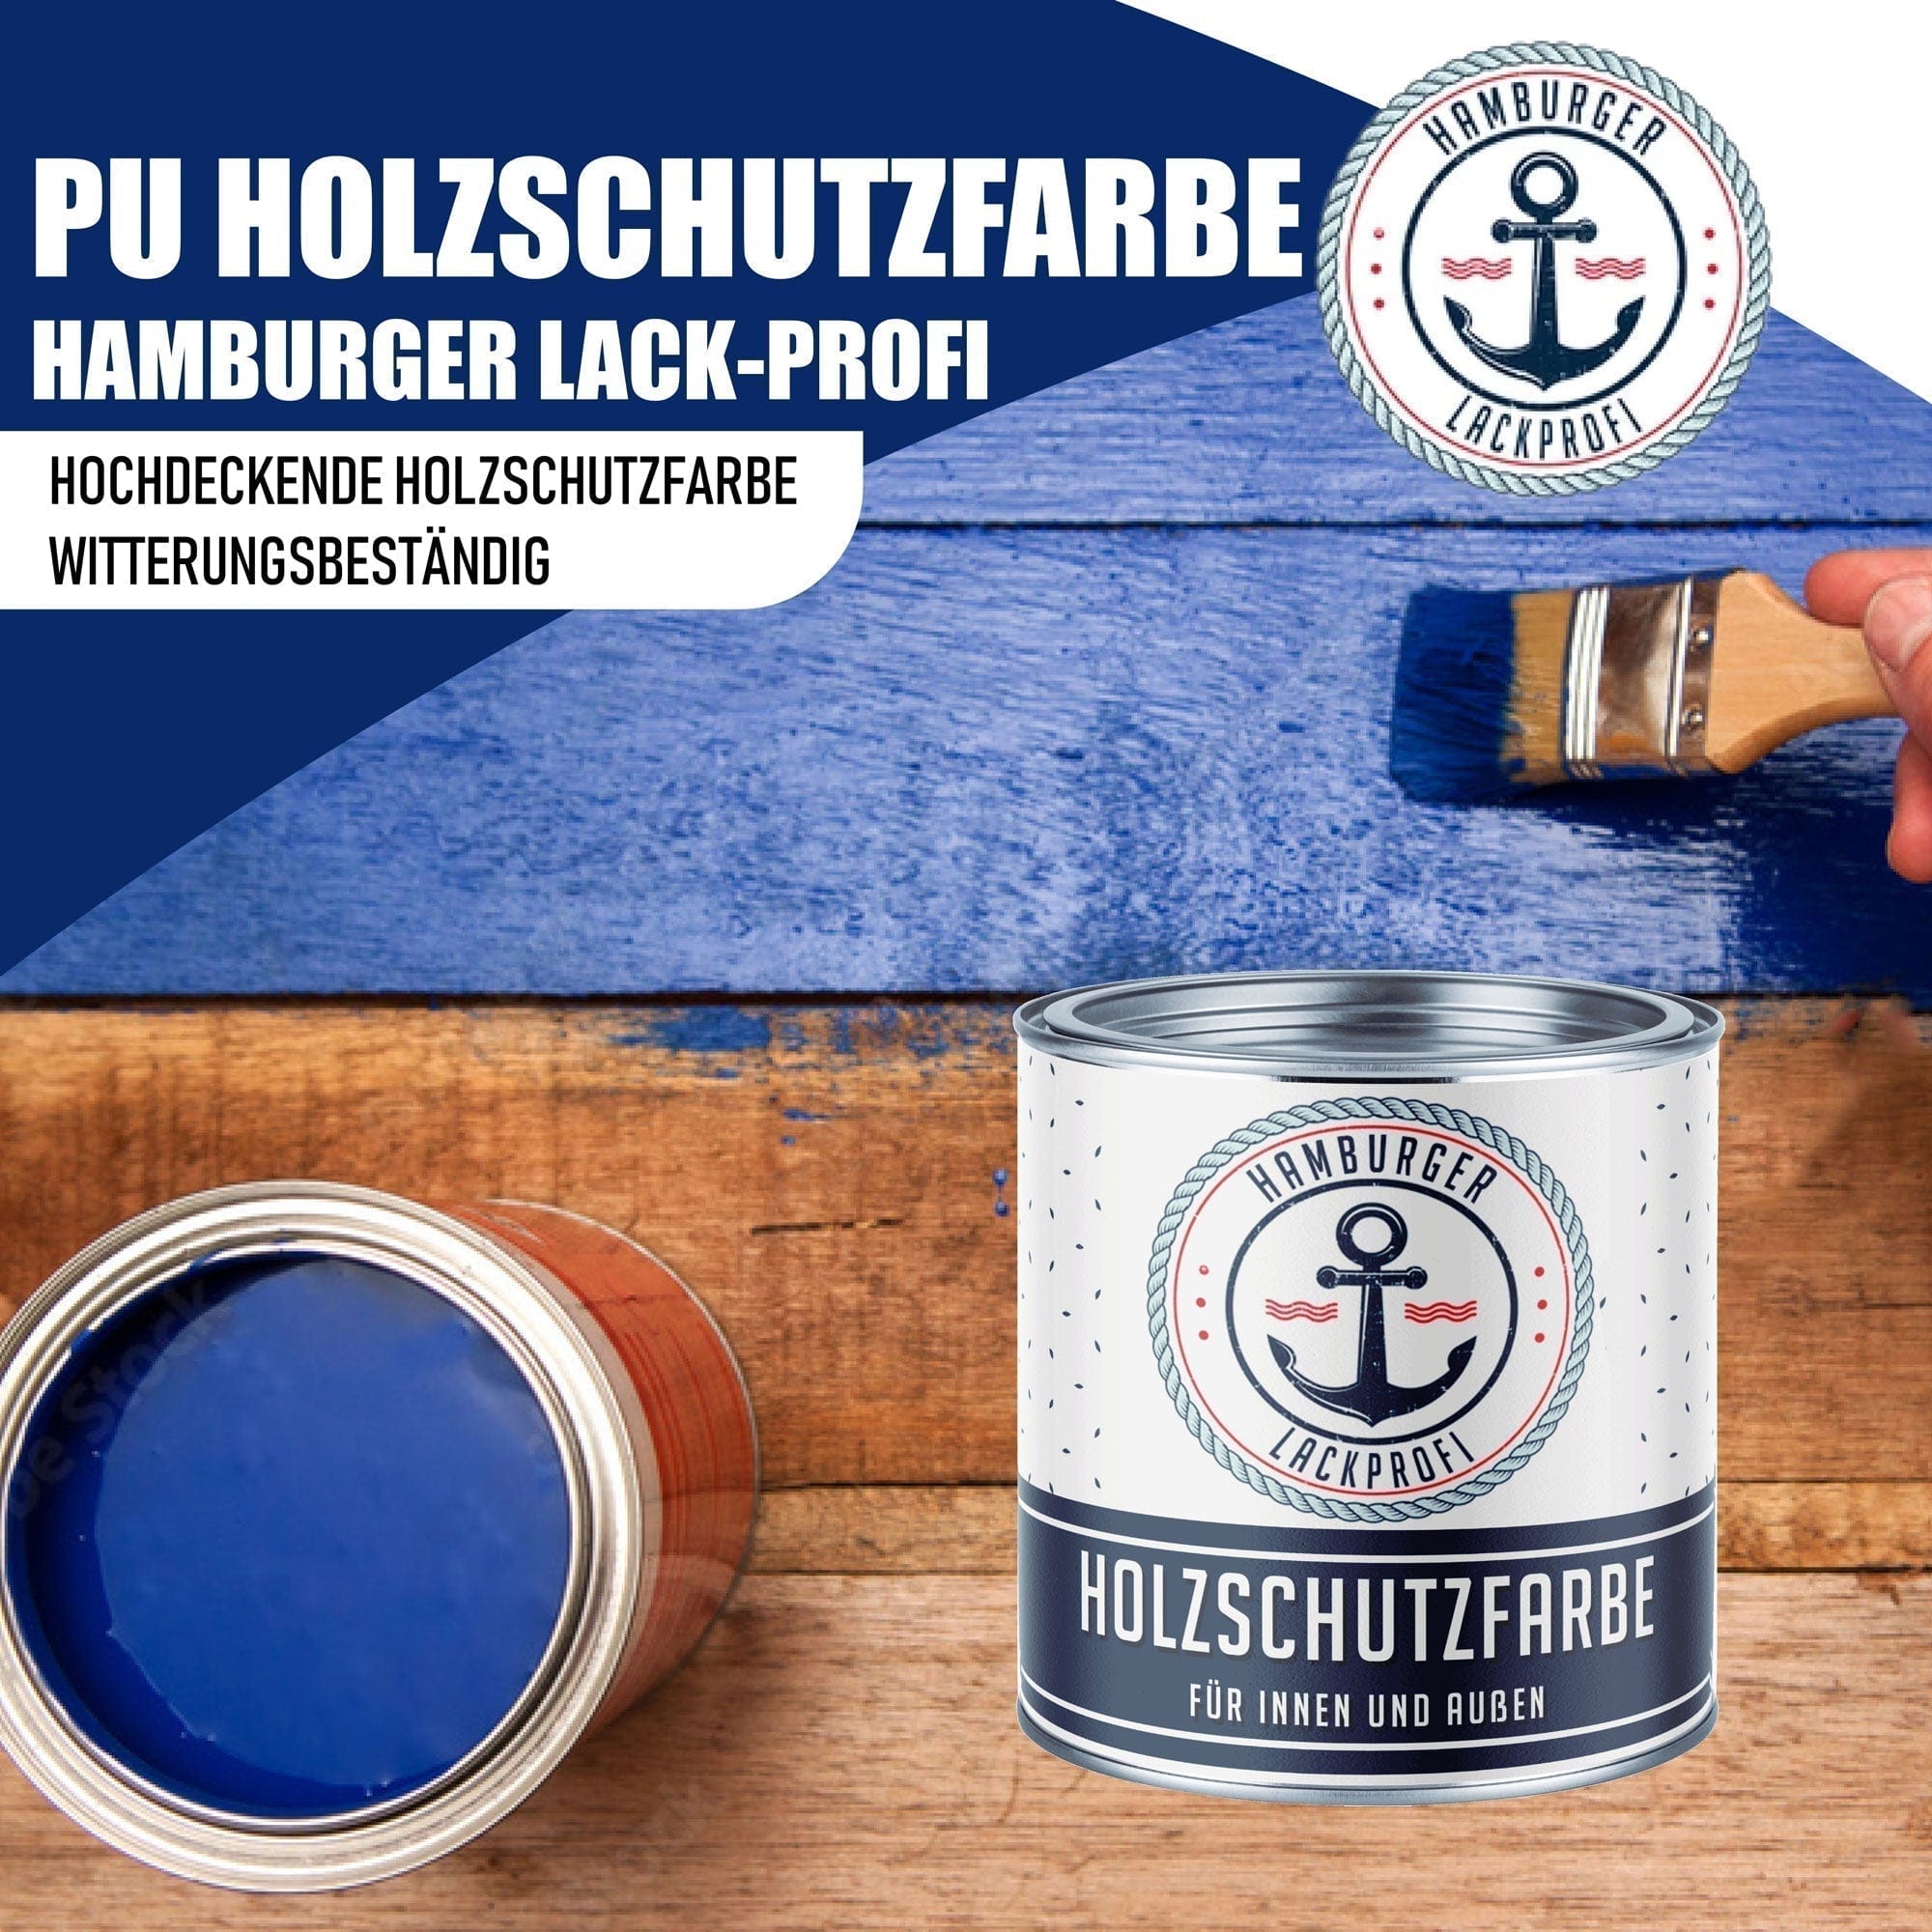 Hamburger Lack-Profi Lacke & Beschichtungen PU Holzschutzfarbe RAL 2011 Tieforange - Wetterschutzfarbe